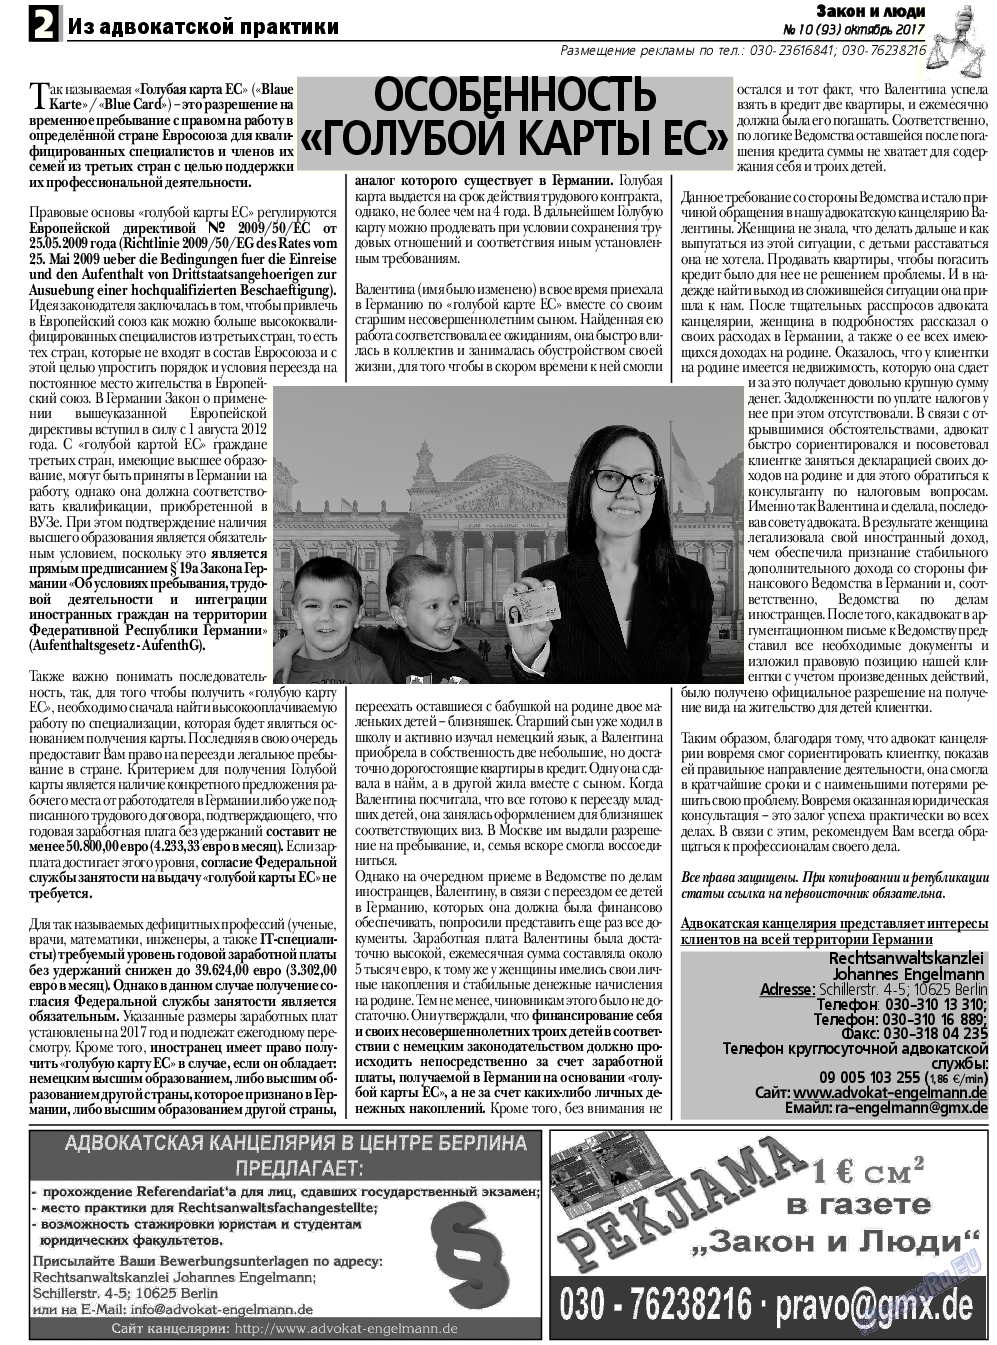 Закон и люди, газета. 2017 №10 стр.2